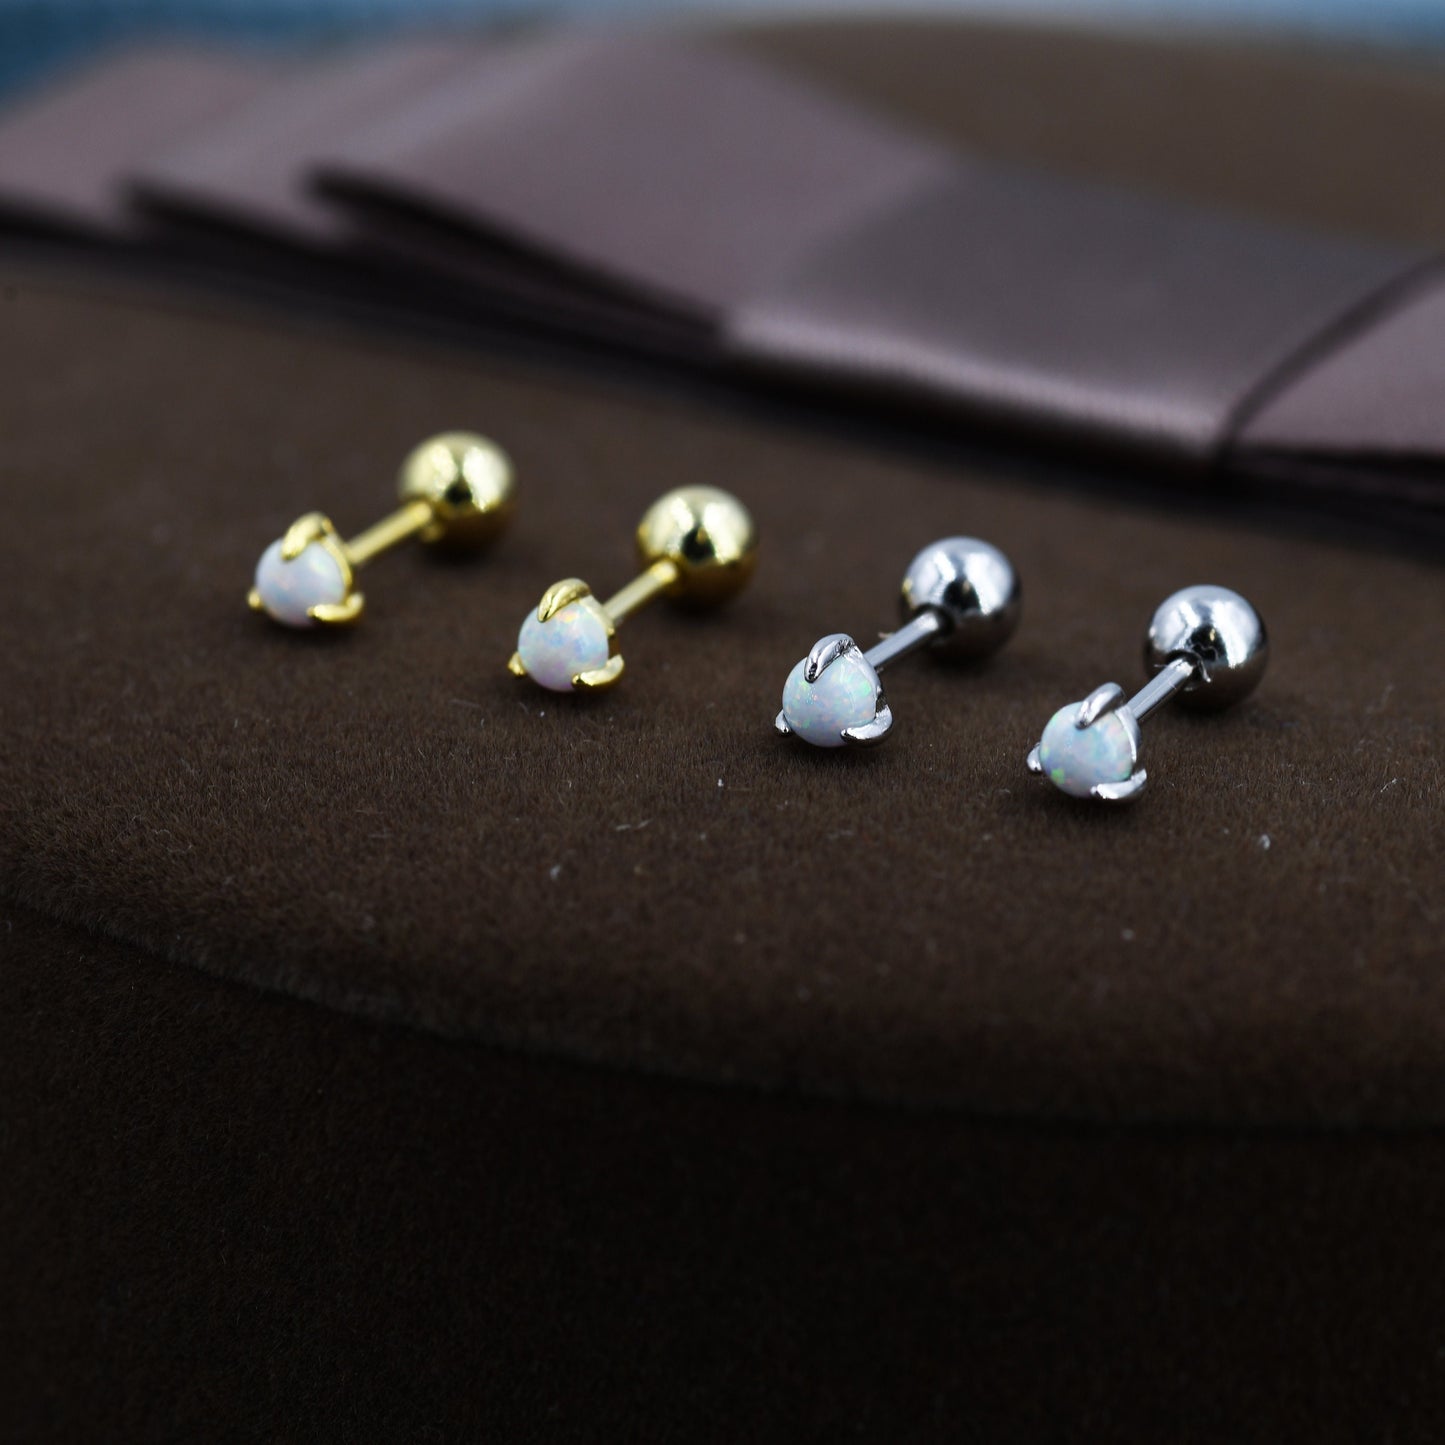 White Opal Screw back Earrings in Sterling Silver, Silver or Gold, Opal Three Prong Earrings,  Screwback Earrings, Opal Barbell Earrings